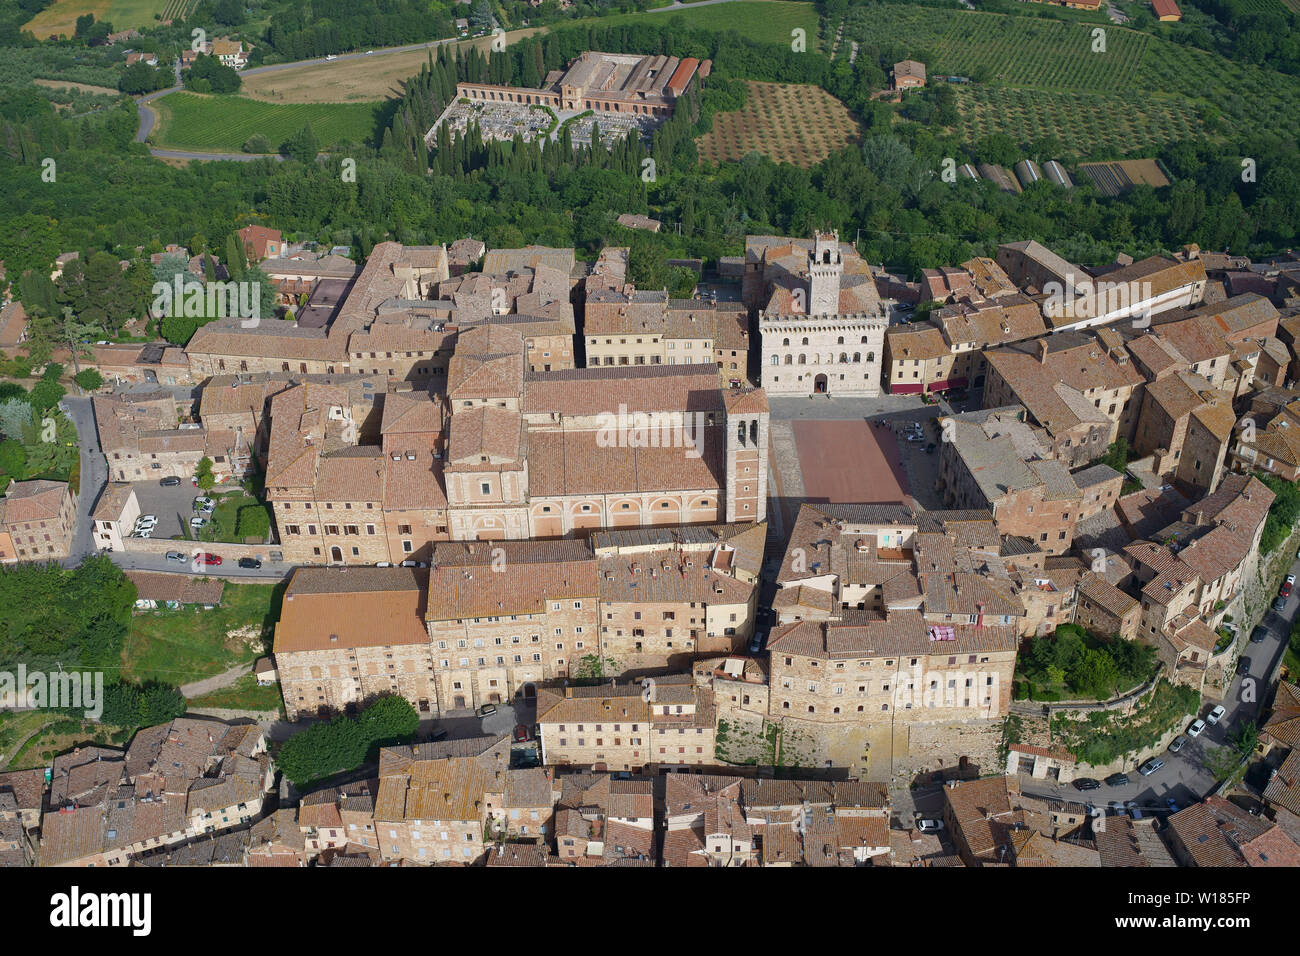 LUFTAUFNAHME. Das Rathaus und andere historische Gebäude rund um die Piazza Grande in der Stadt Montepulciano. Provinz Siena, Toskana, Italien. Stockfoto